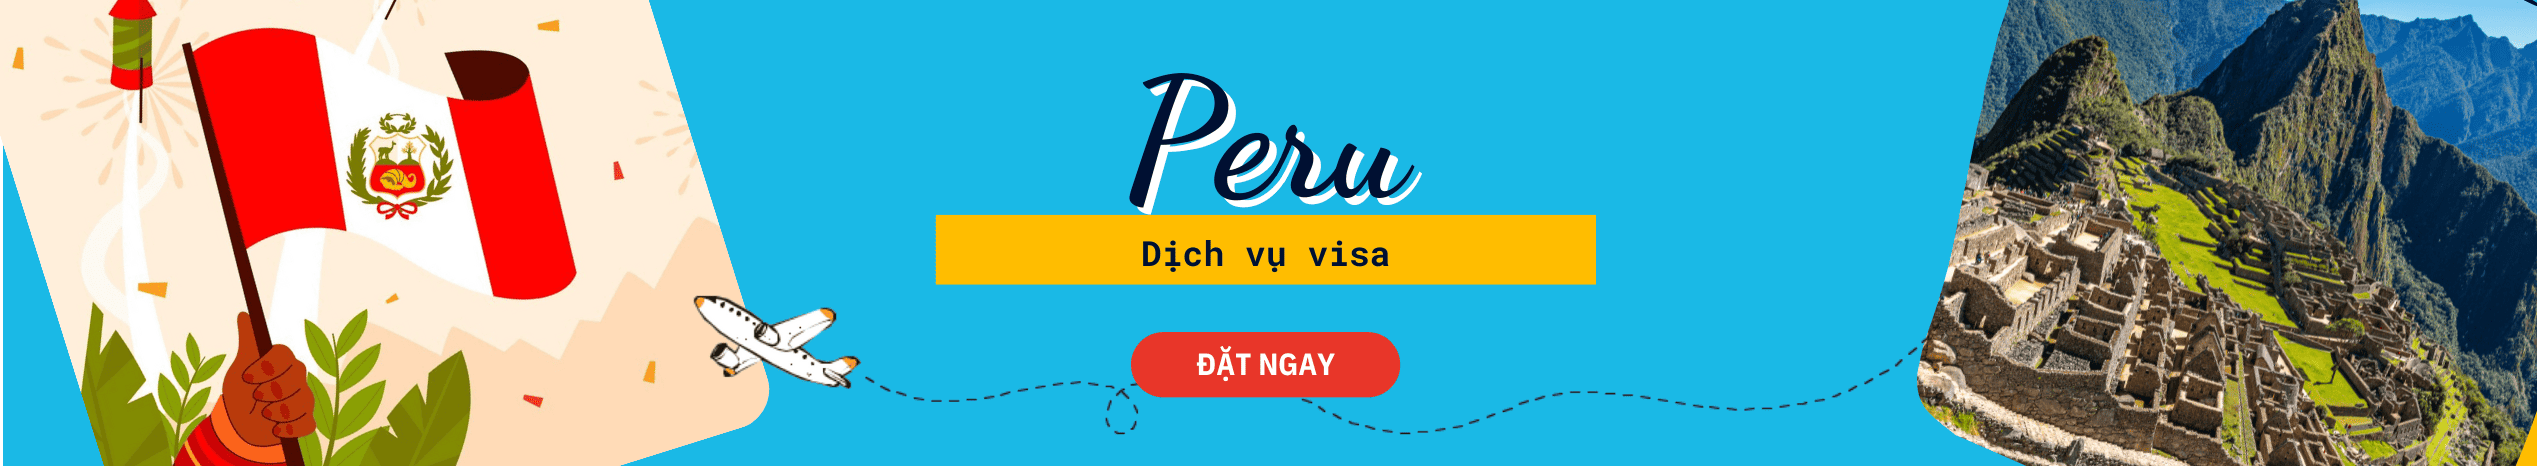 Dịch vụ hỗ trợ xin Visa Peru du lịch & công tác